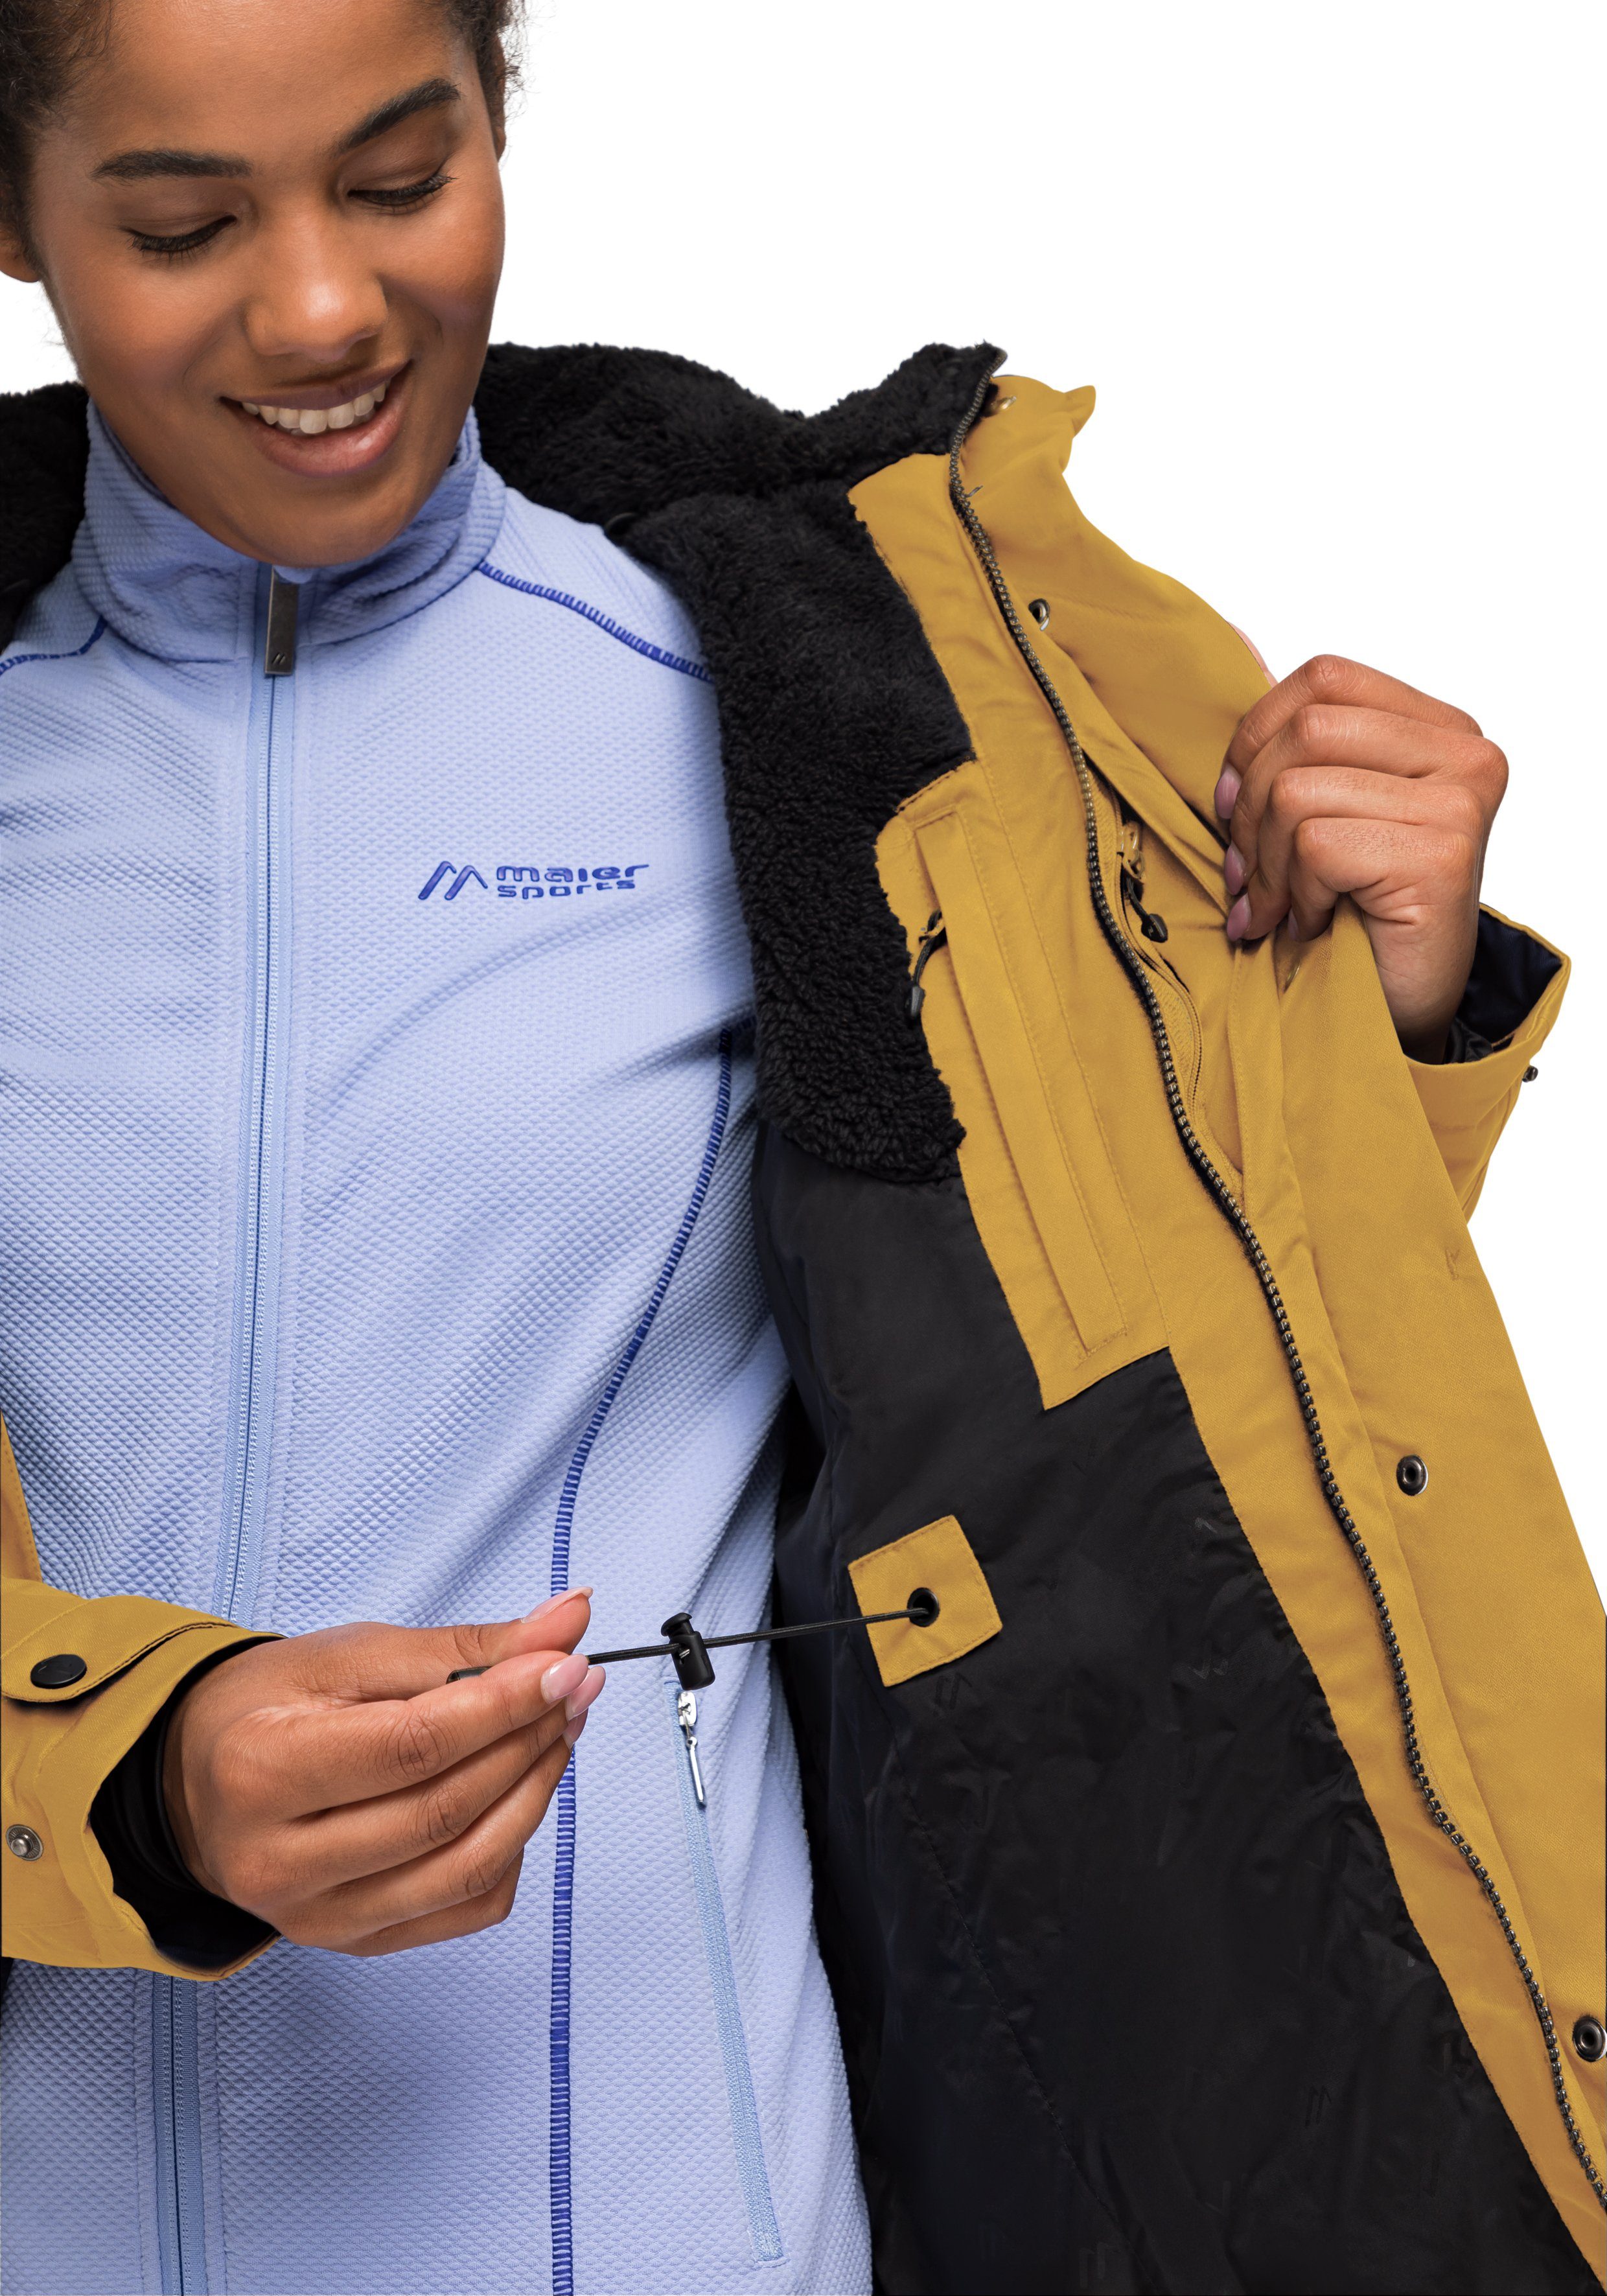 vollem 2 Sports Lisa Funktionsjacke mit Outdoor-Mantel Wetterschutz Maier sonnengelb